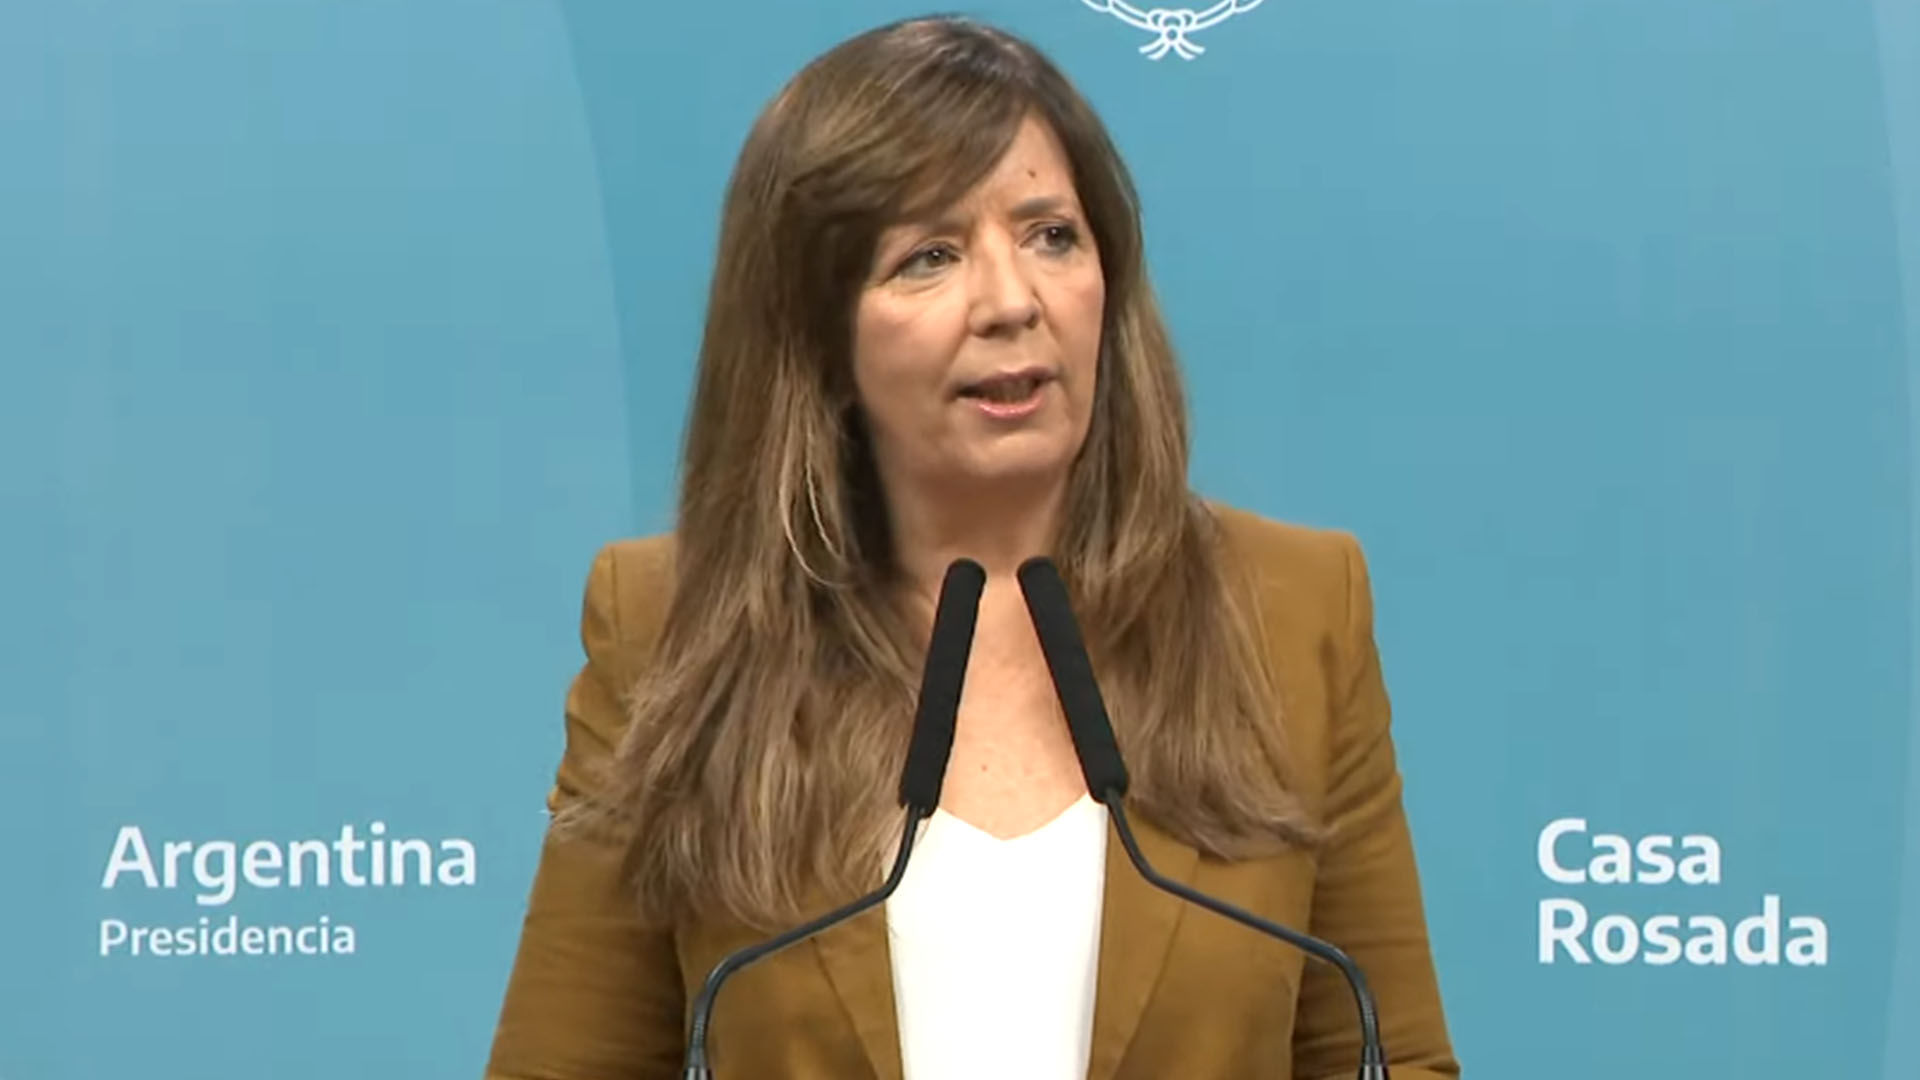 La portavoz de presidencia, Gabriela Cerrutti, interpretó los dichos del papa Francisco sobre la pobreza en Argentina 